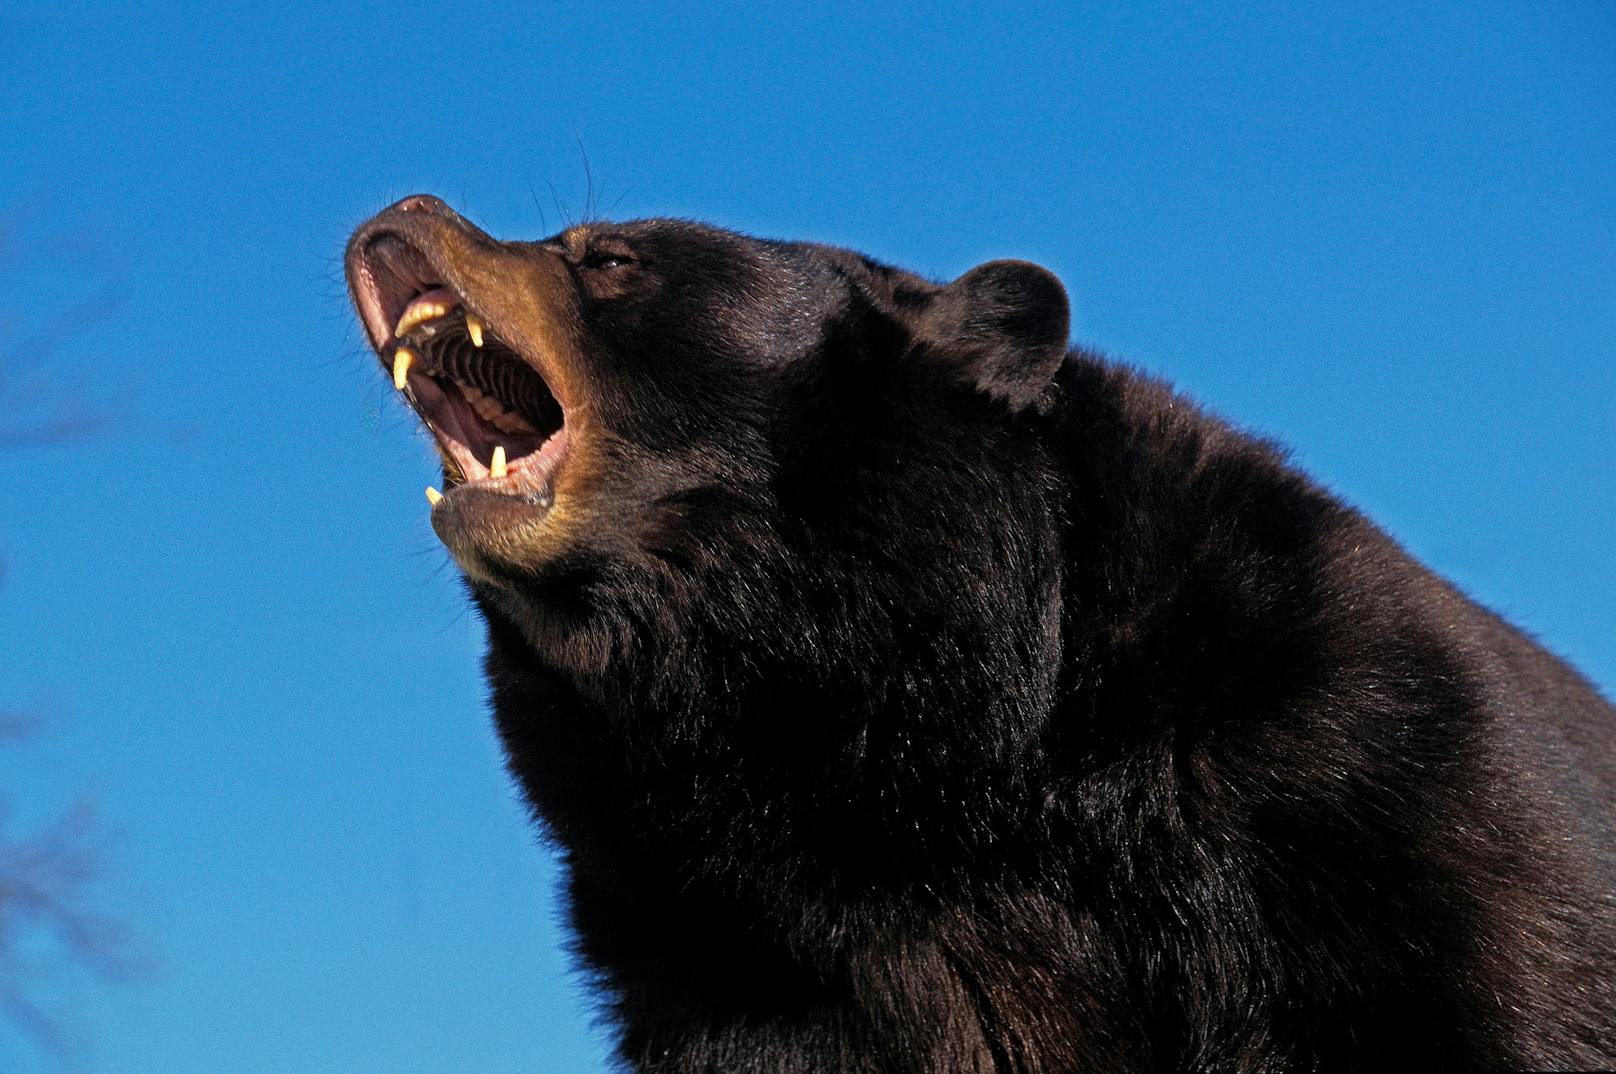 Ein Amerikanischer Schwarzbär (Ursus americanus) in Abwehrstellung. Symbolbild